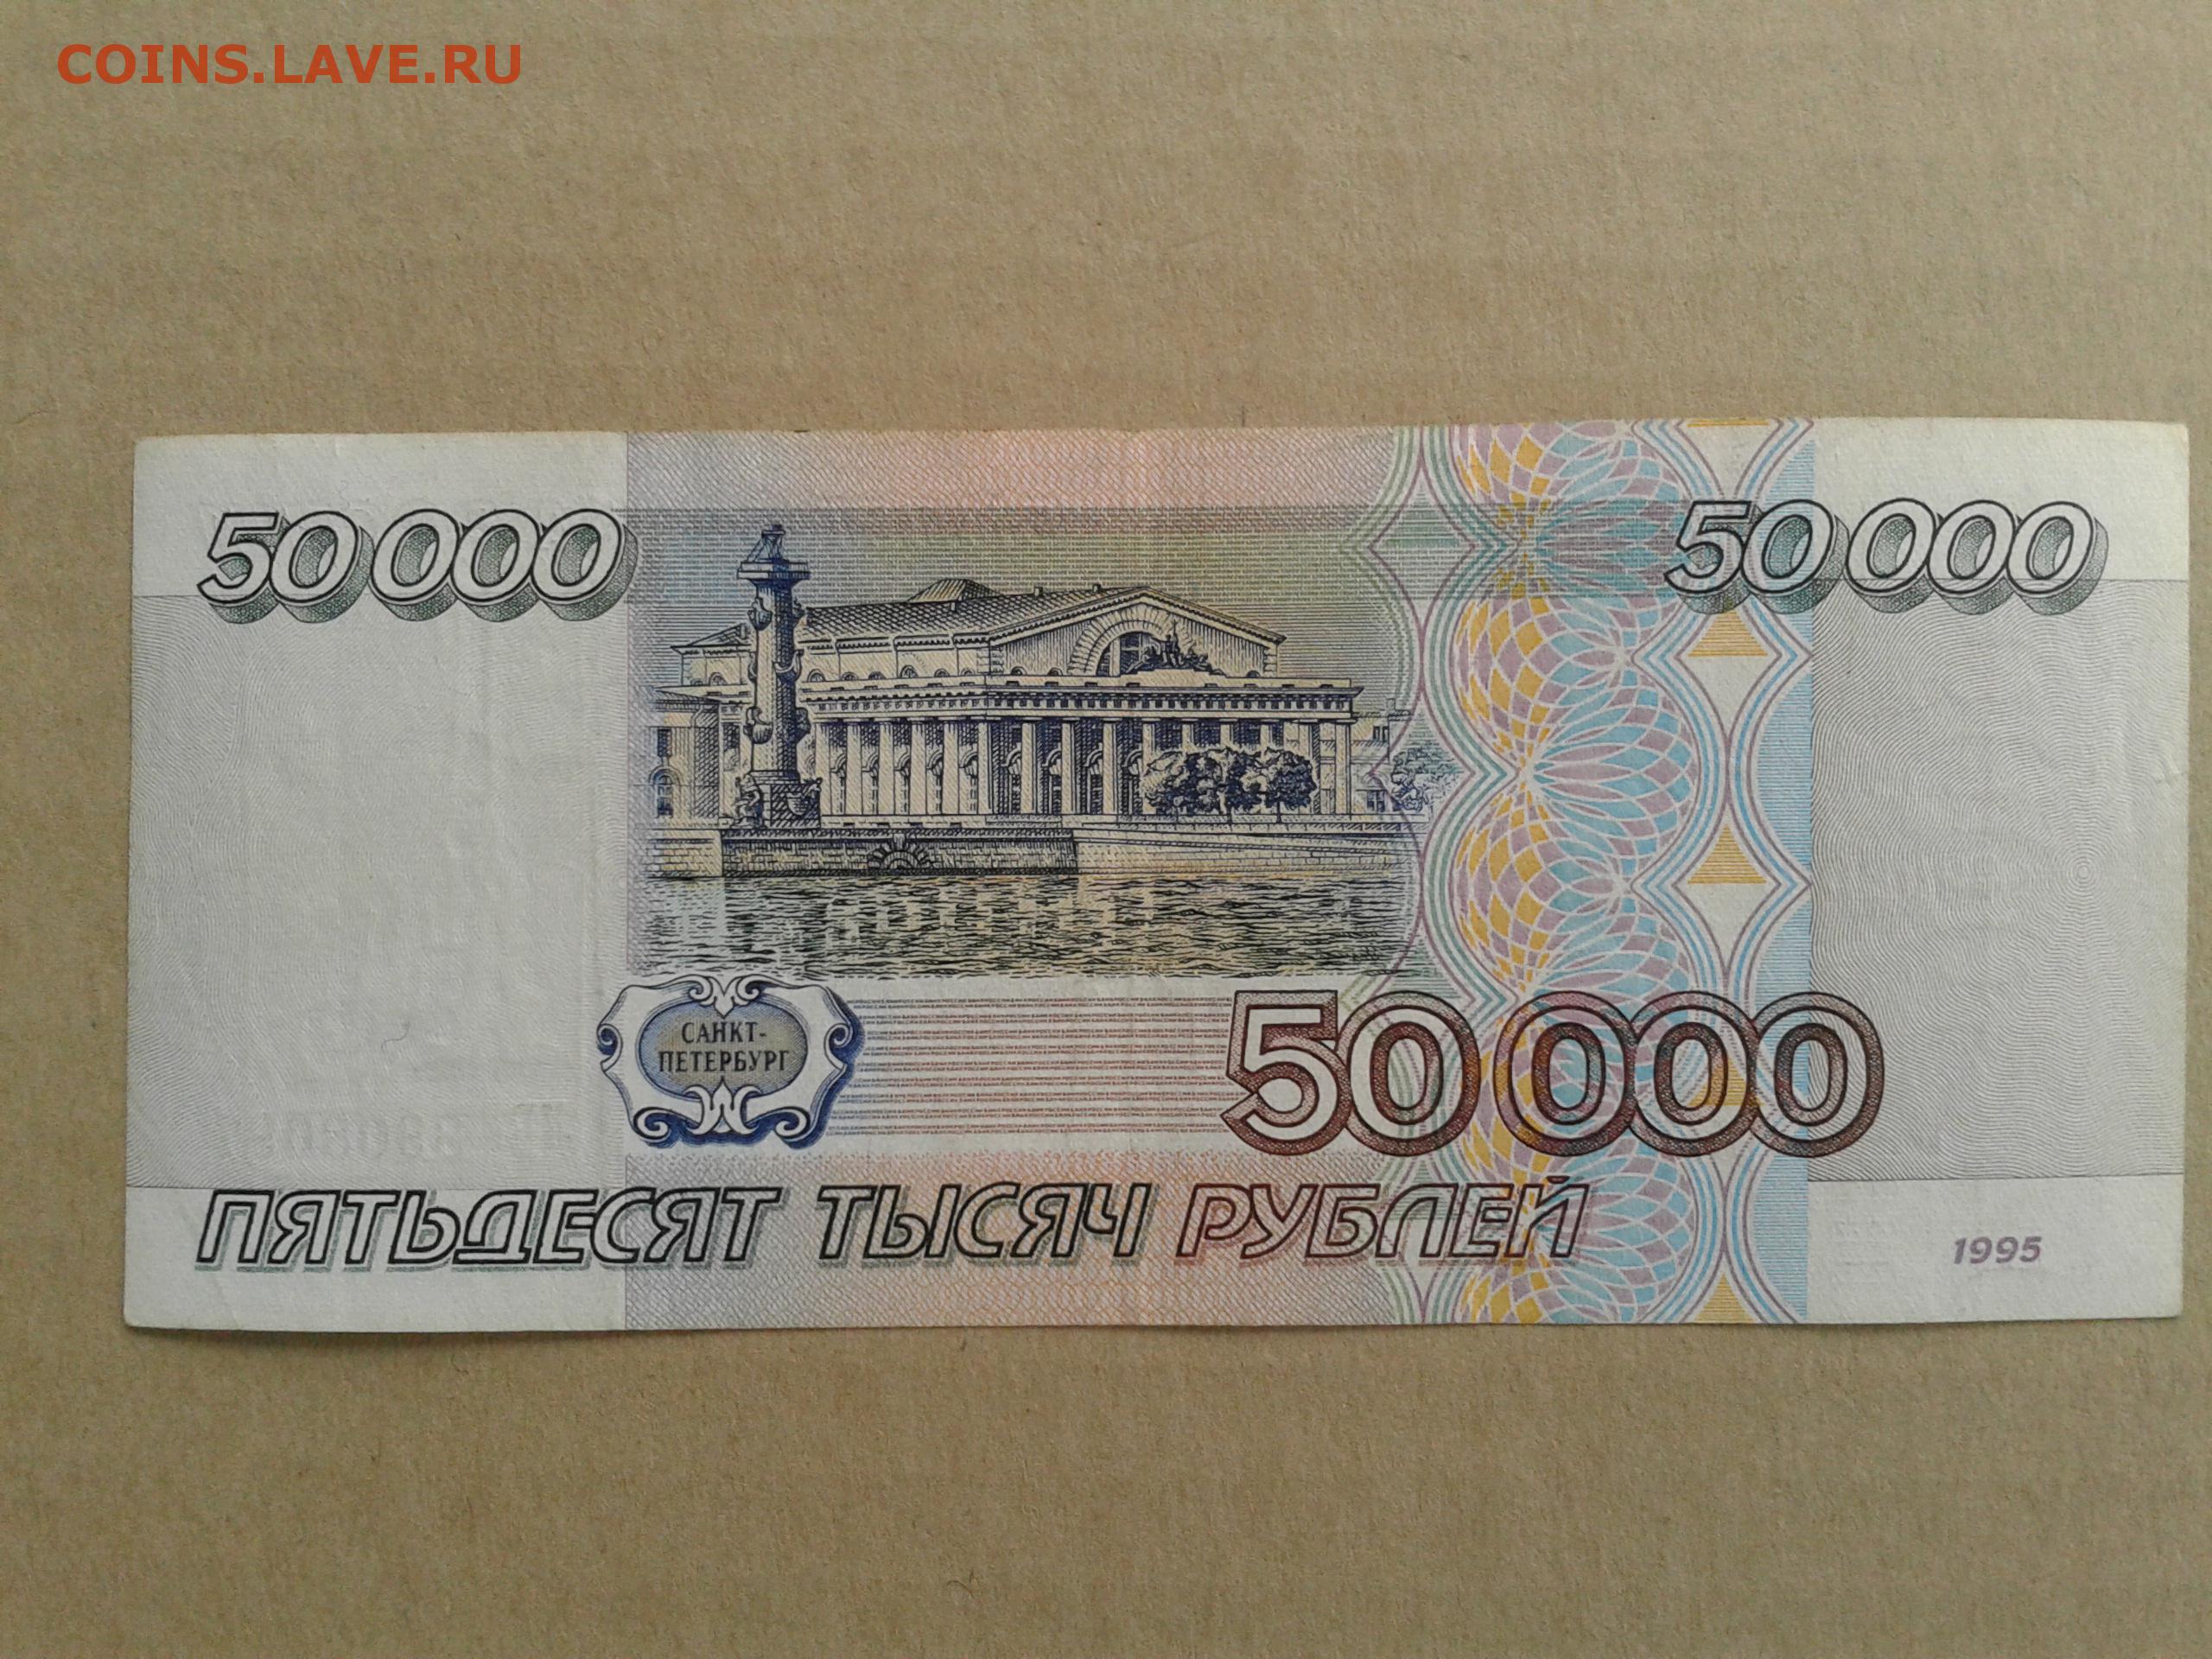 Покупка за 0 рублей. 50 000 Рублей 1995. 50 0000 Рублей. 0 Рублей бумажкой. 1 000 000 Рублей бумажка.